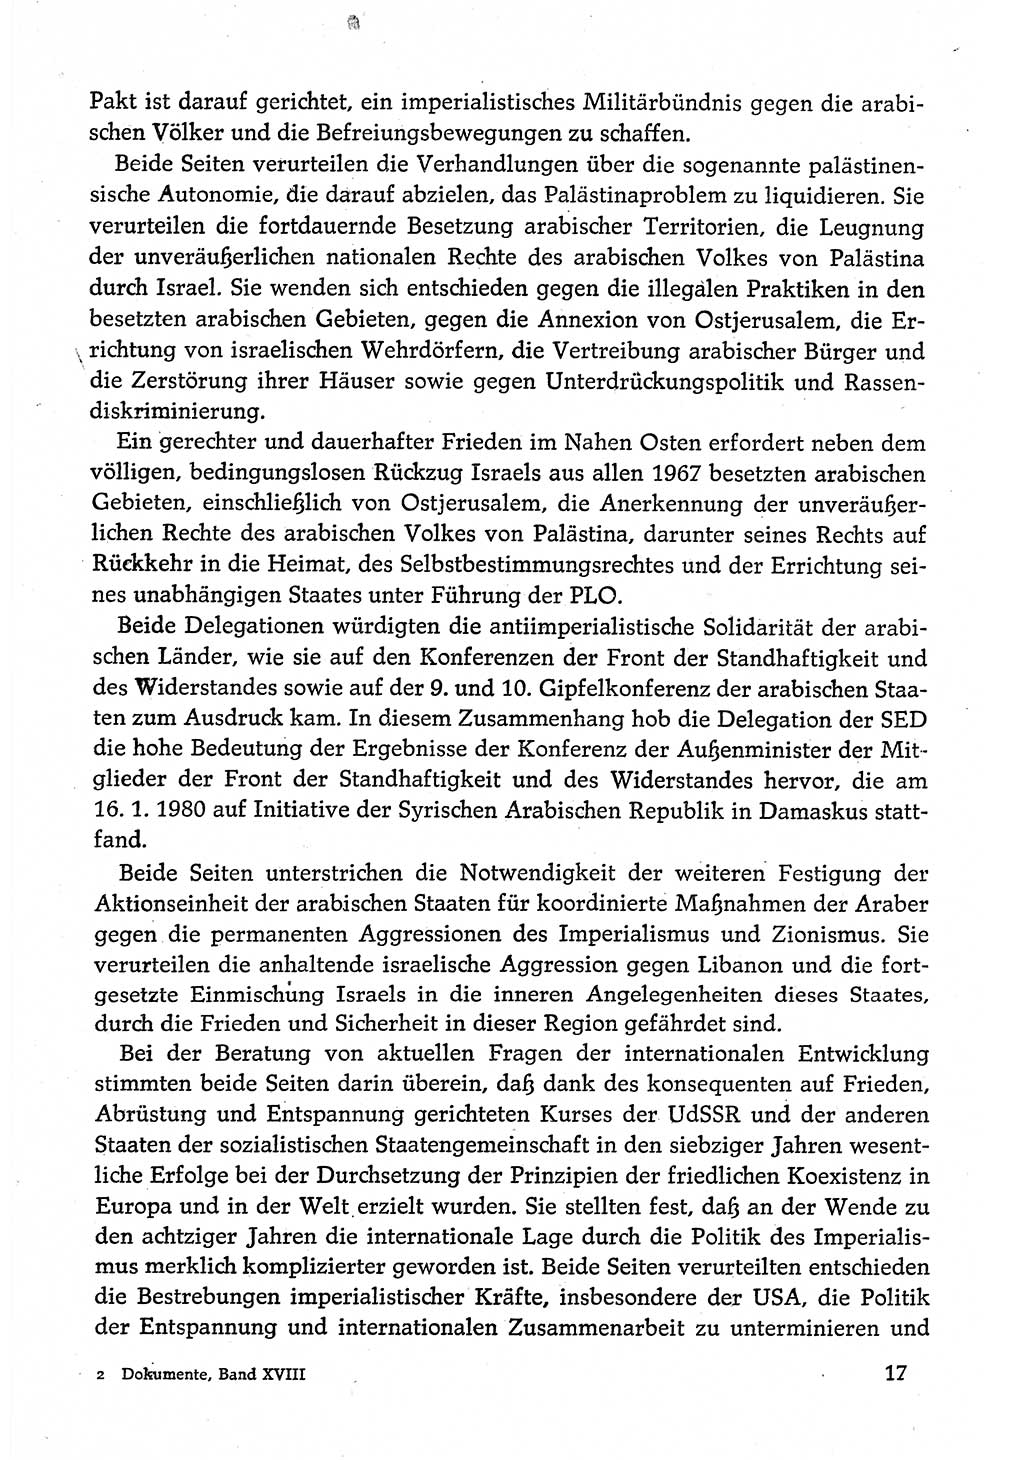 Dokumente der Sozialistischen Einheitspartei Deutschlands (SED) [Deutsche Demokratische Republik (DDR)] 1980-1981, Seite 17 (Dok. SED DDR 1980-1981, S. 17)